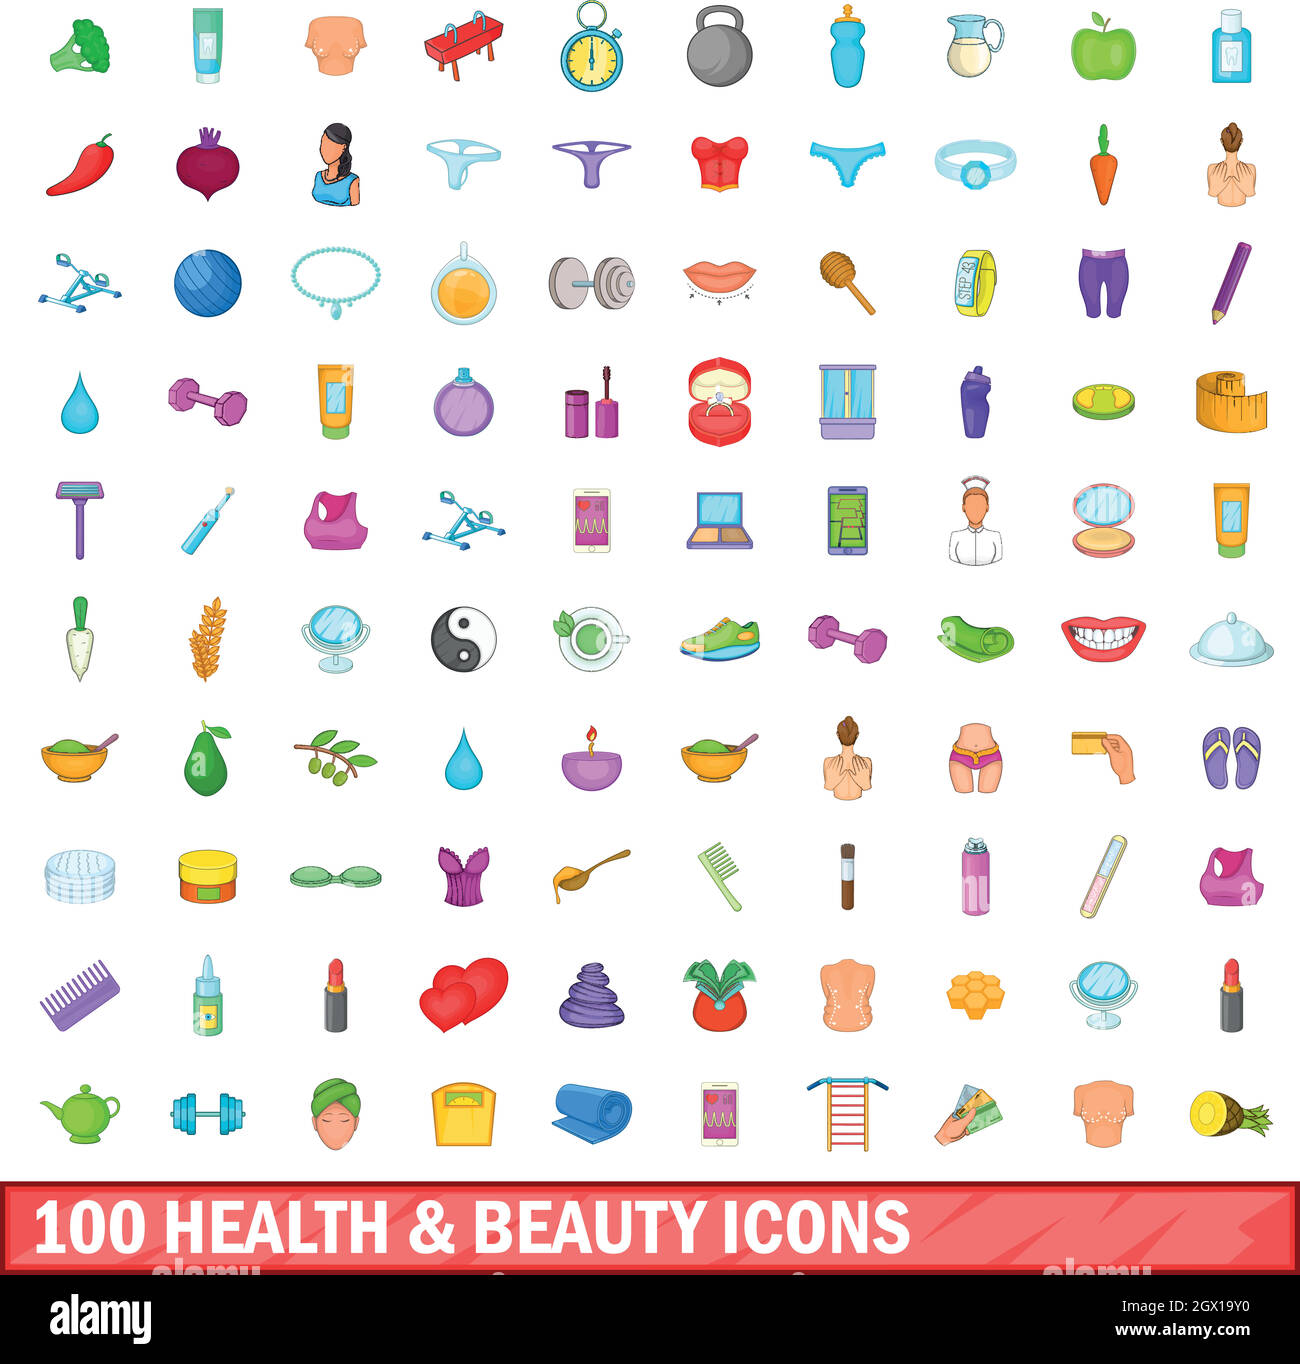 100 iconos de belleza y salud, estilo de dibujos animados Ilustración del Vector